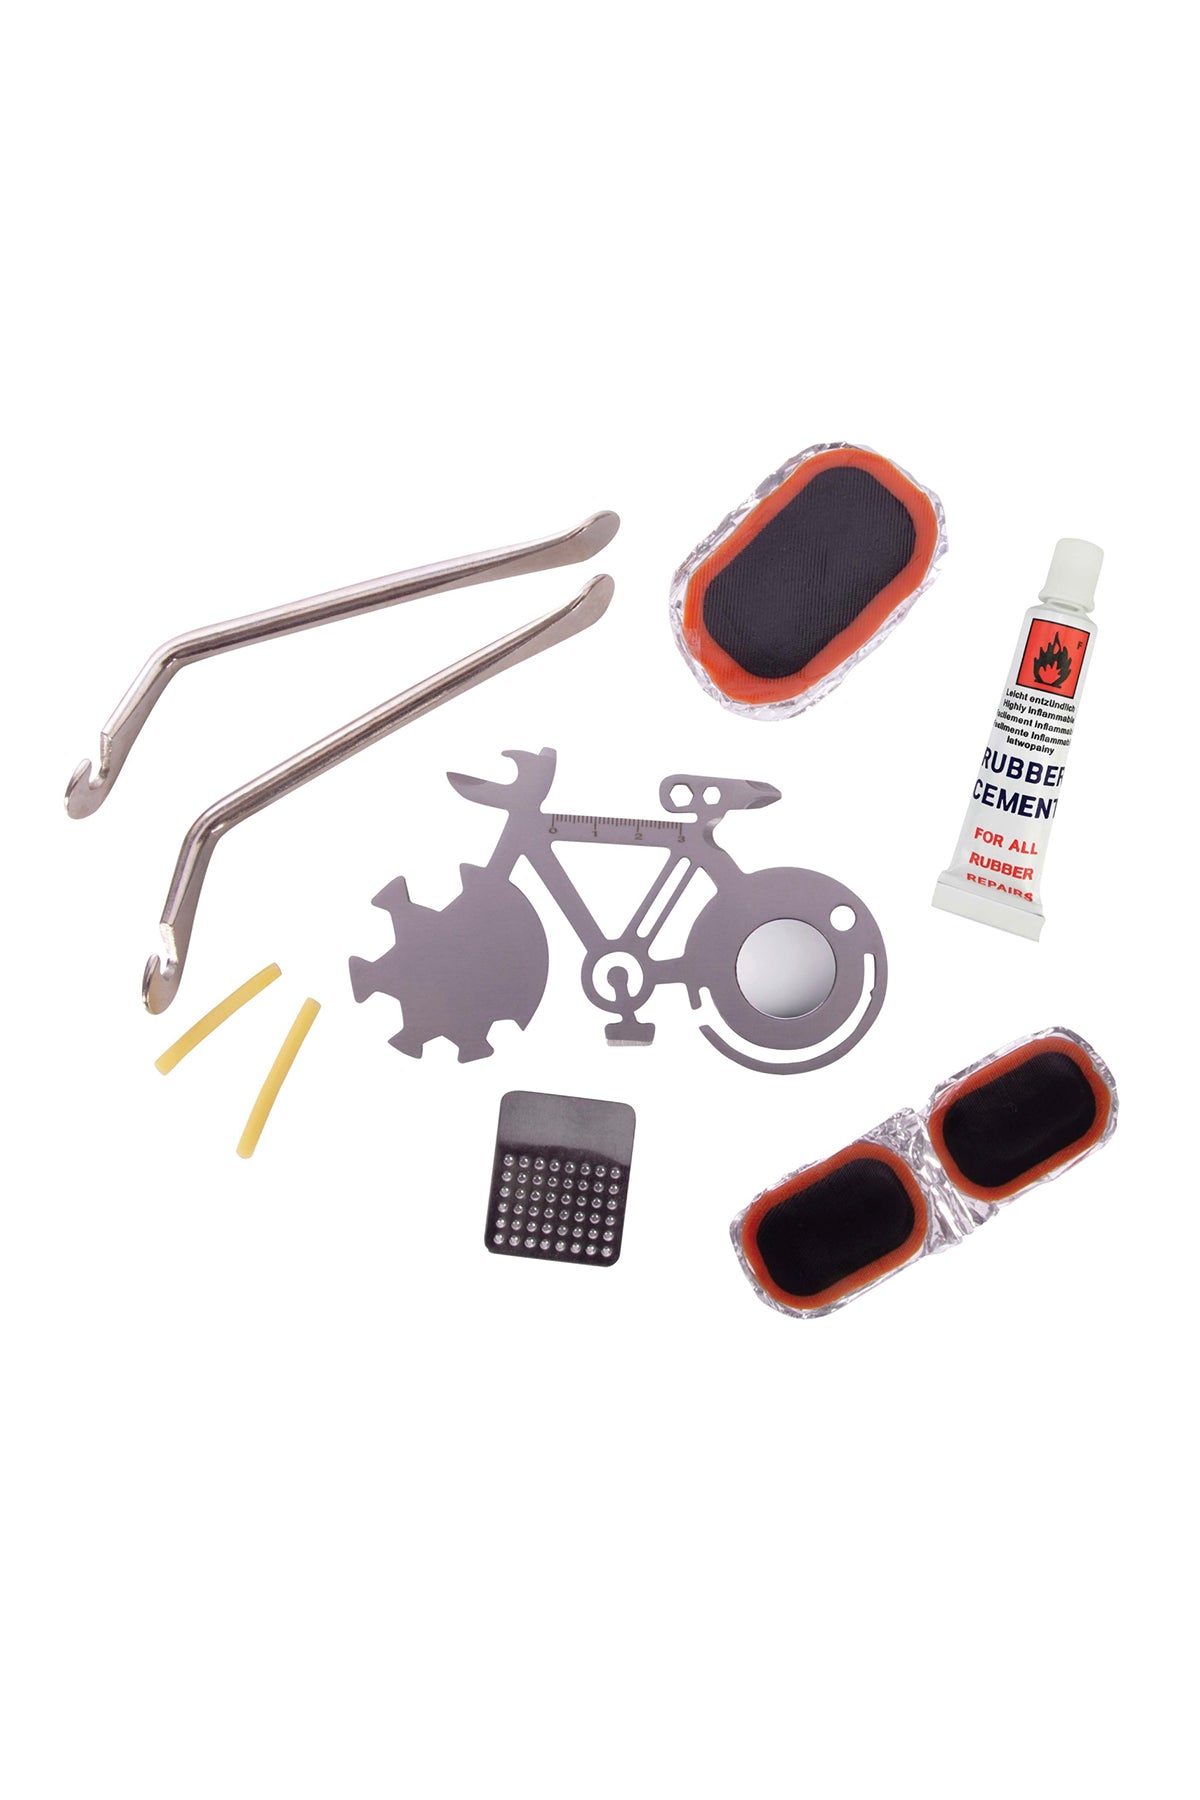 Bicycle Repair Kit in a Tin